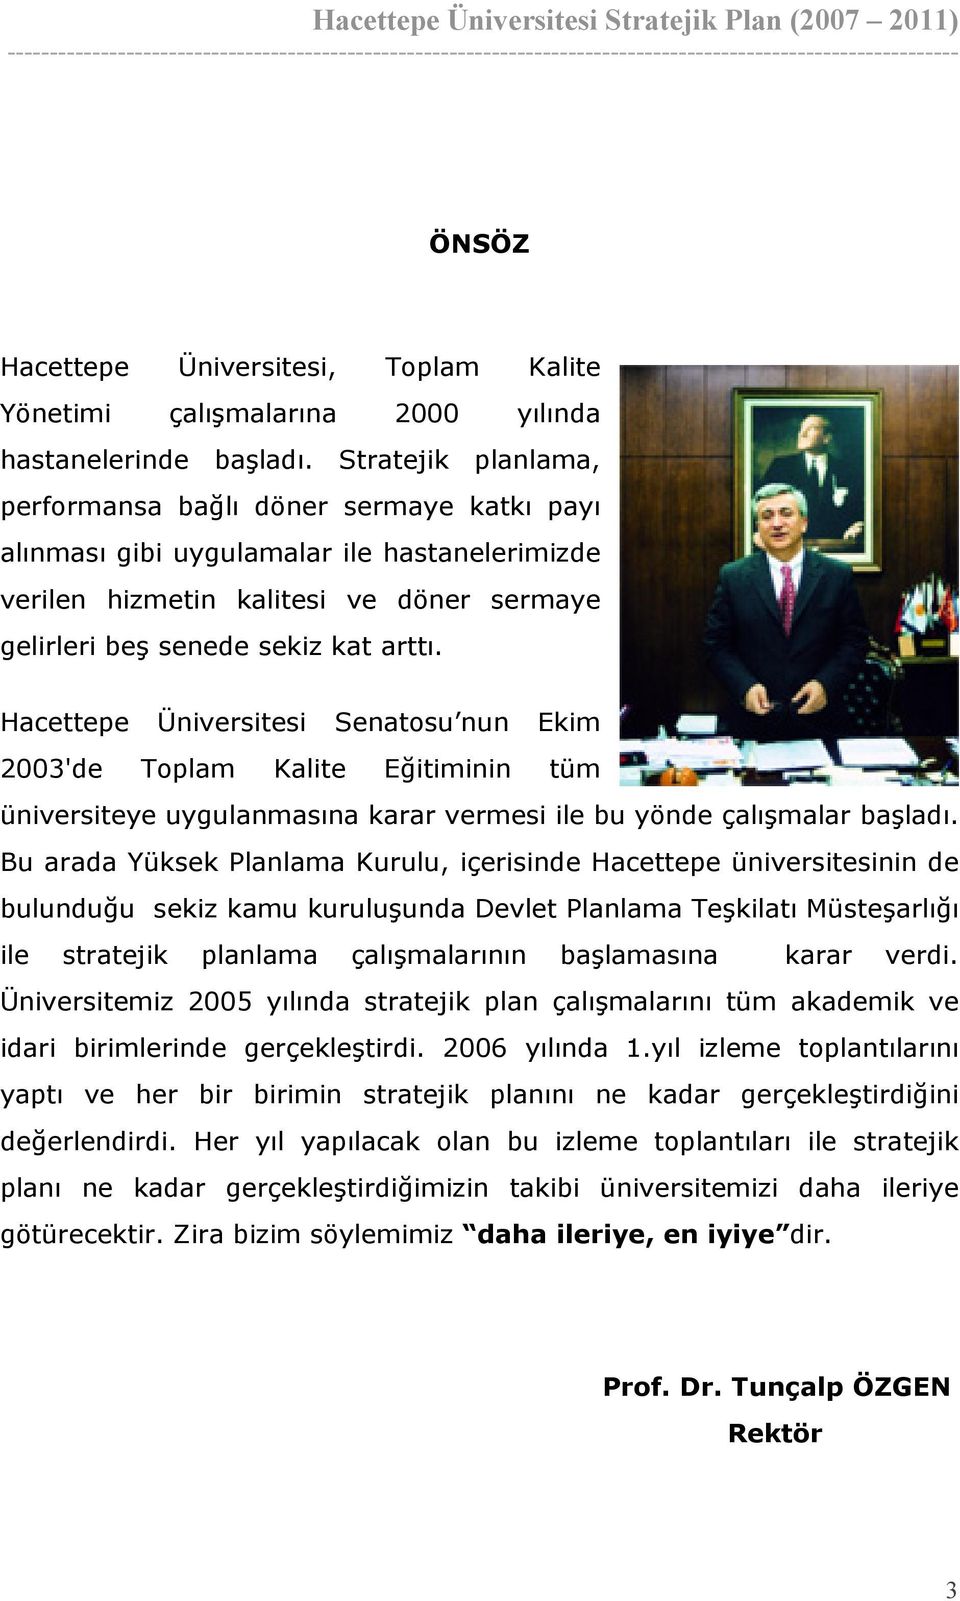 Hacettepe Üniversitesi Senatosu nun Ekim 2003'de Toplam Kalite Eğitiminin tüm üniversiteye uygulanmasına karar vermesi ile bu yönde çalışmalar başladı.